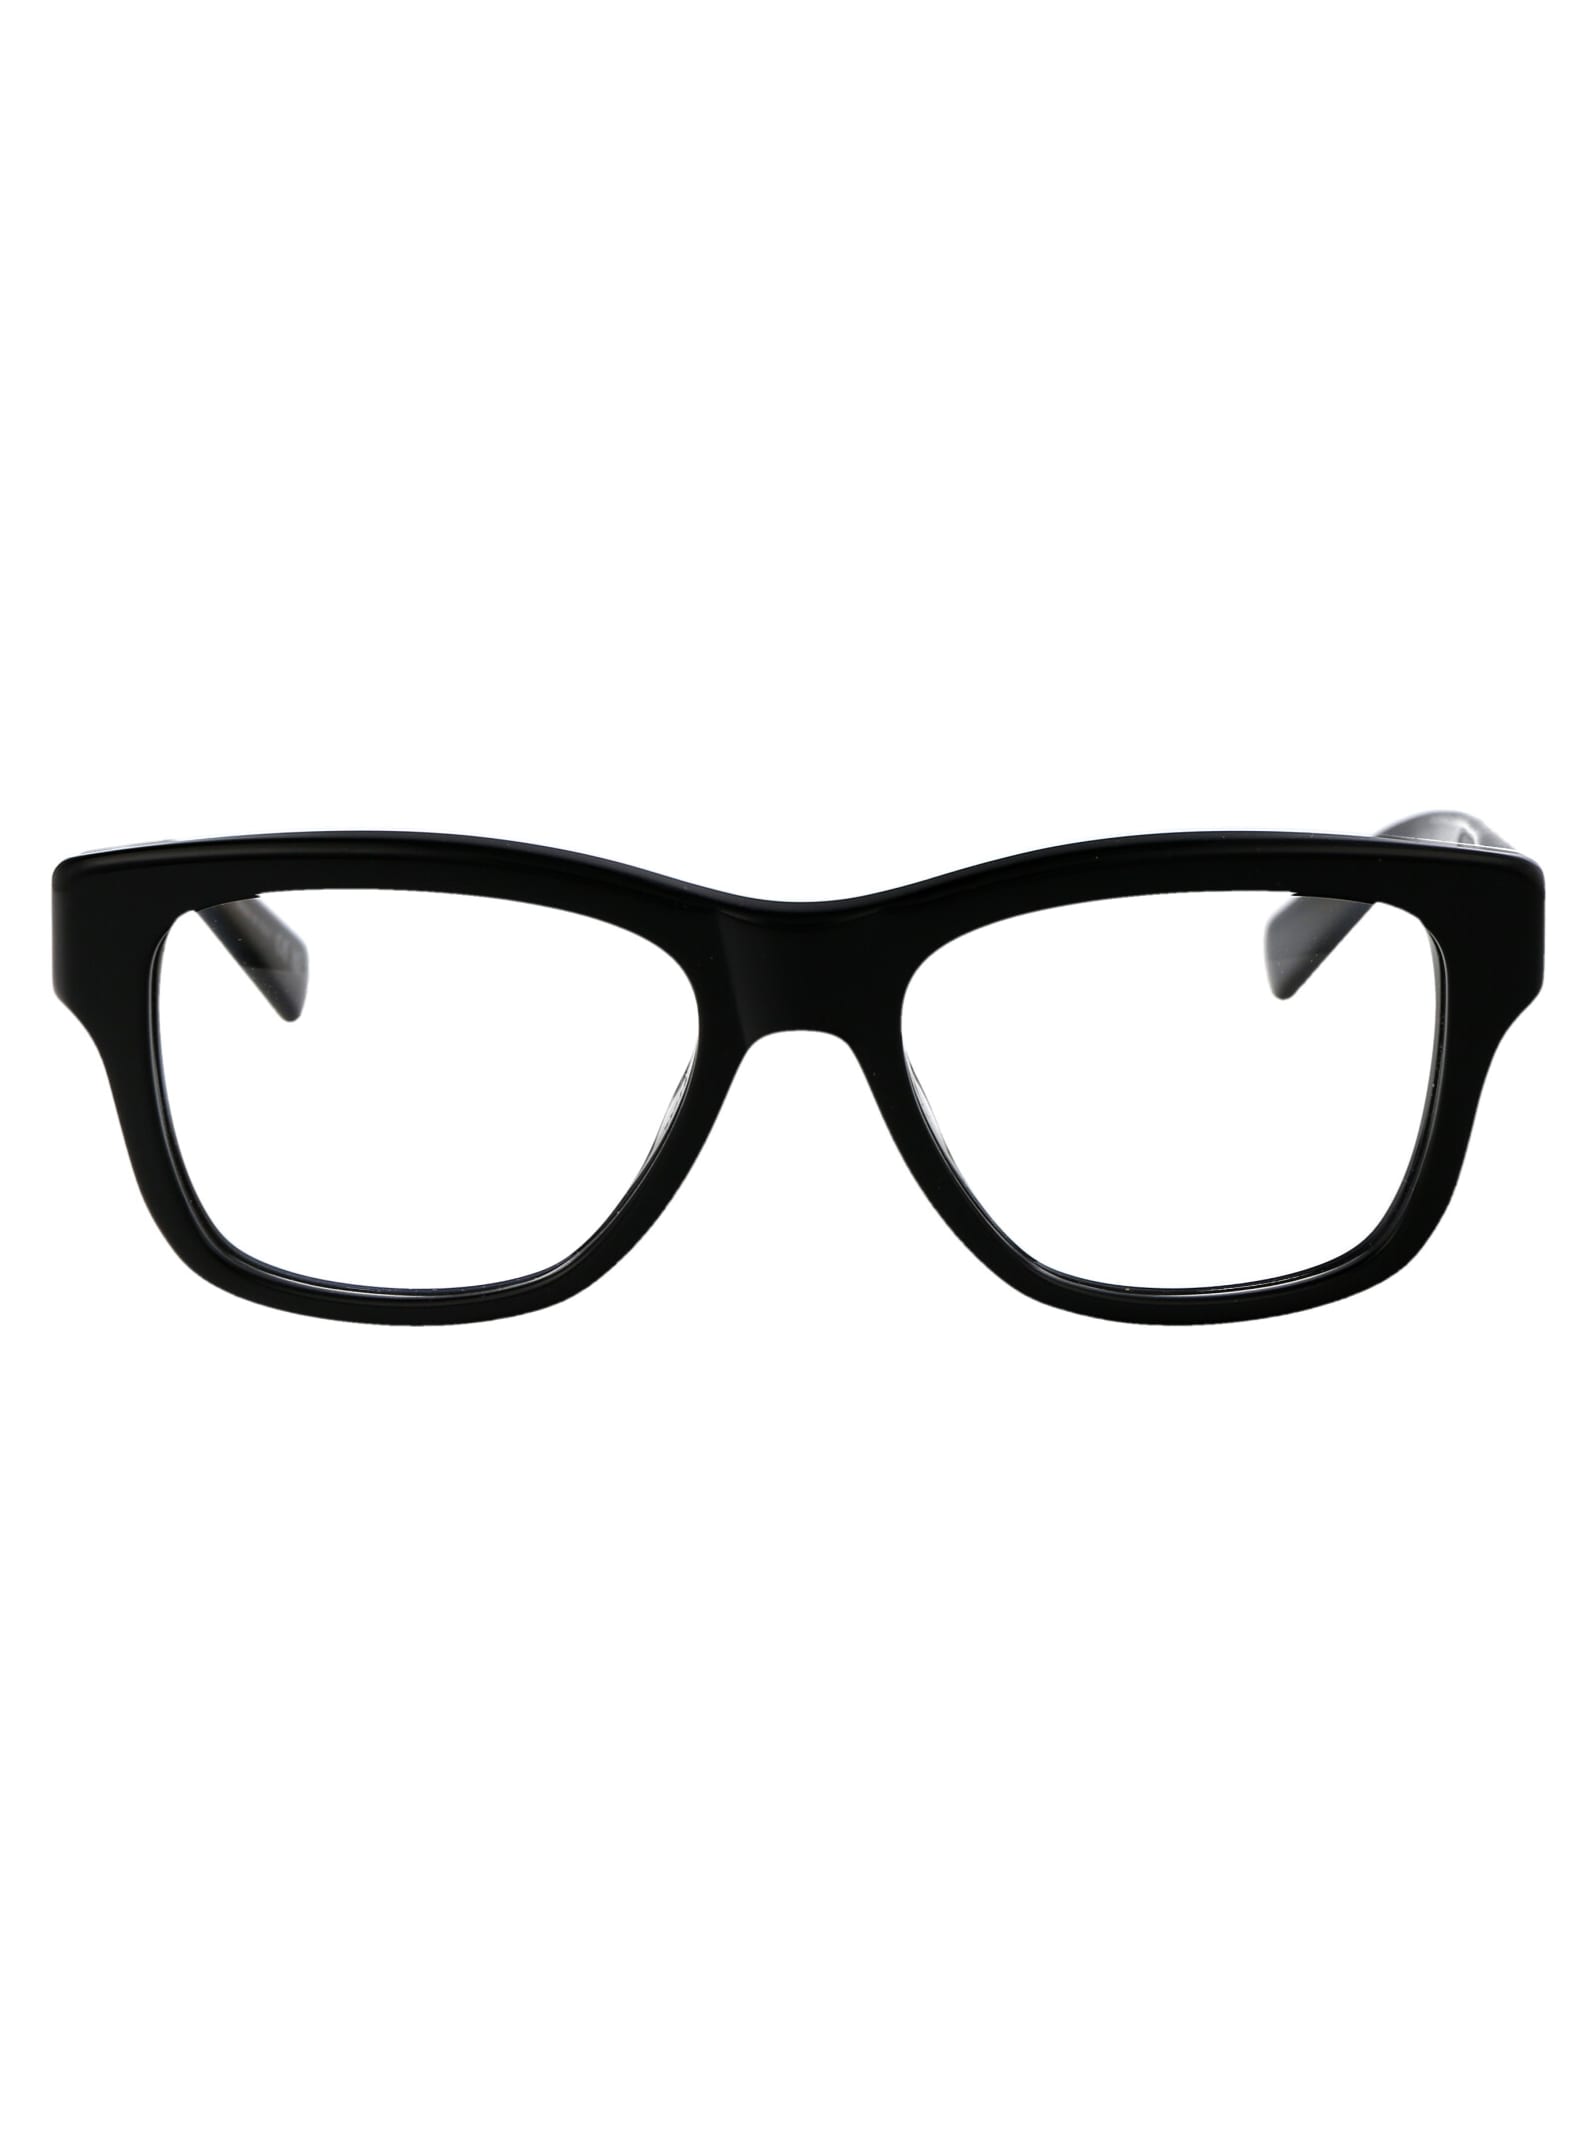 Sl 677 Glasses